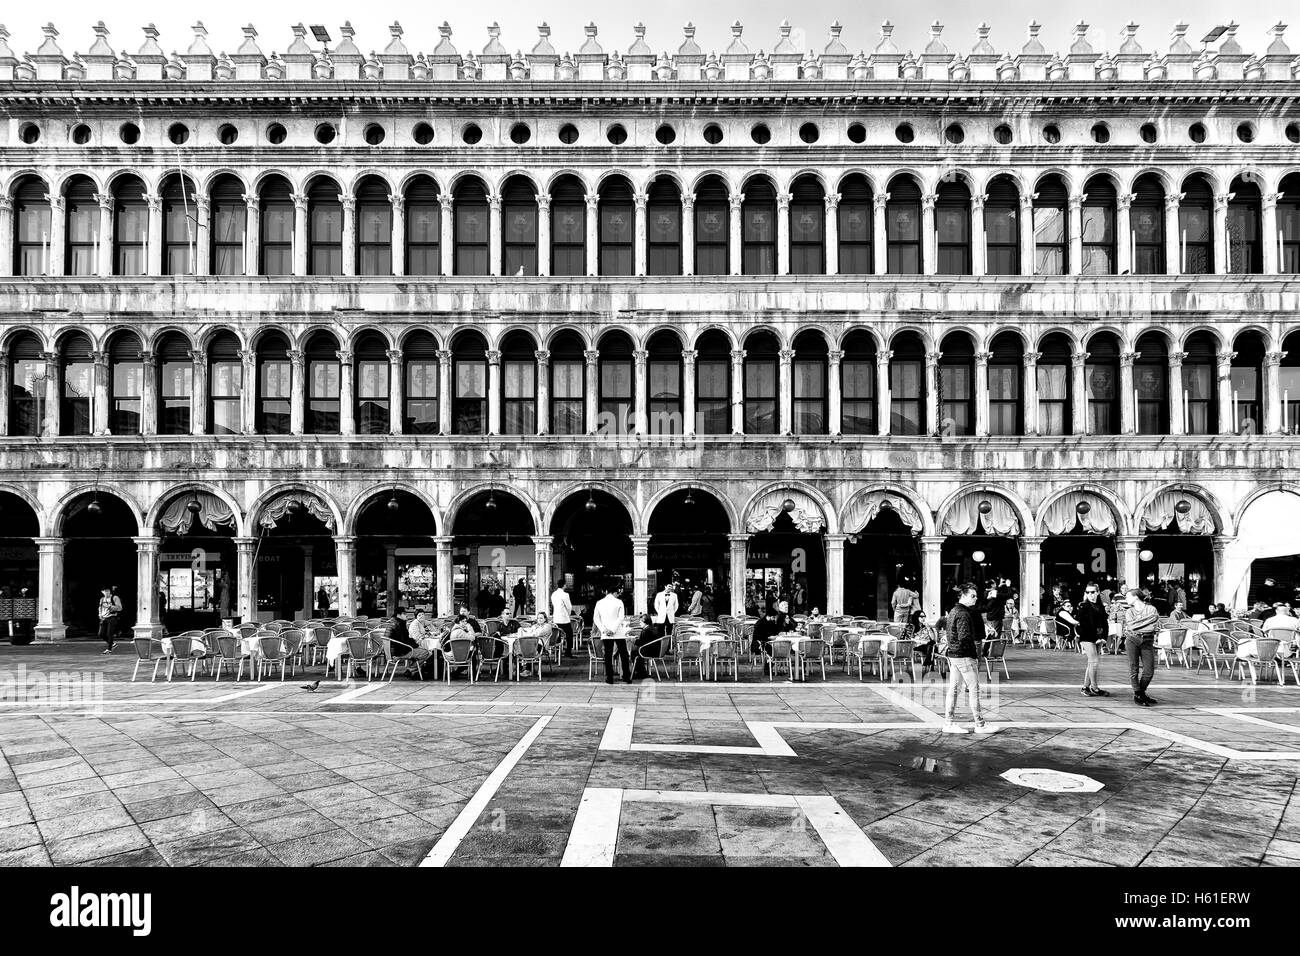 Venise, Italie - le 16 octobre 2016:Les touristes sur la Piazza San Marco à Venise, la célèbre ville romantique Italienne Banque D'Images